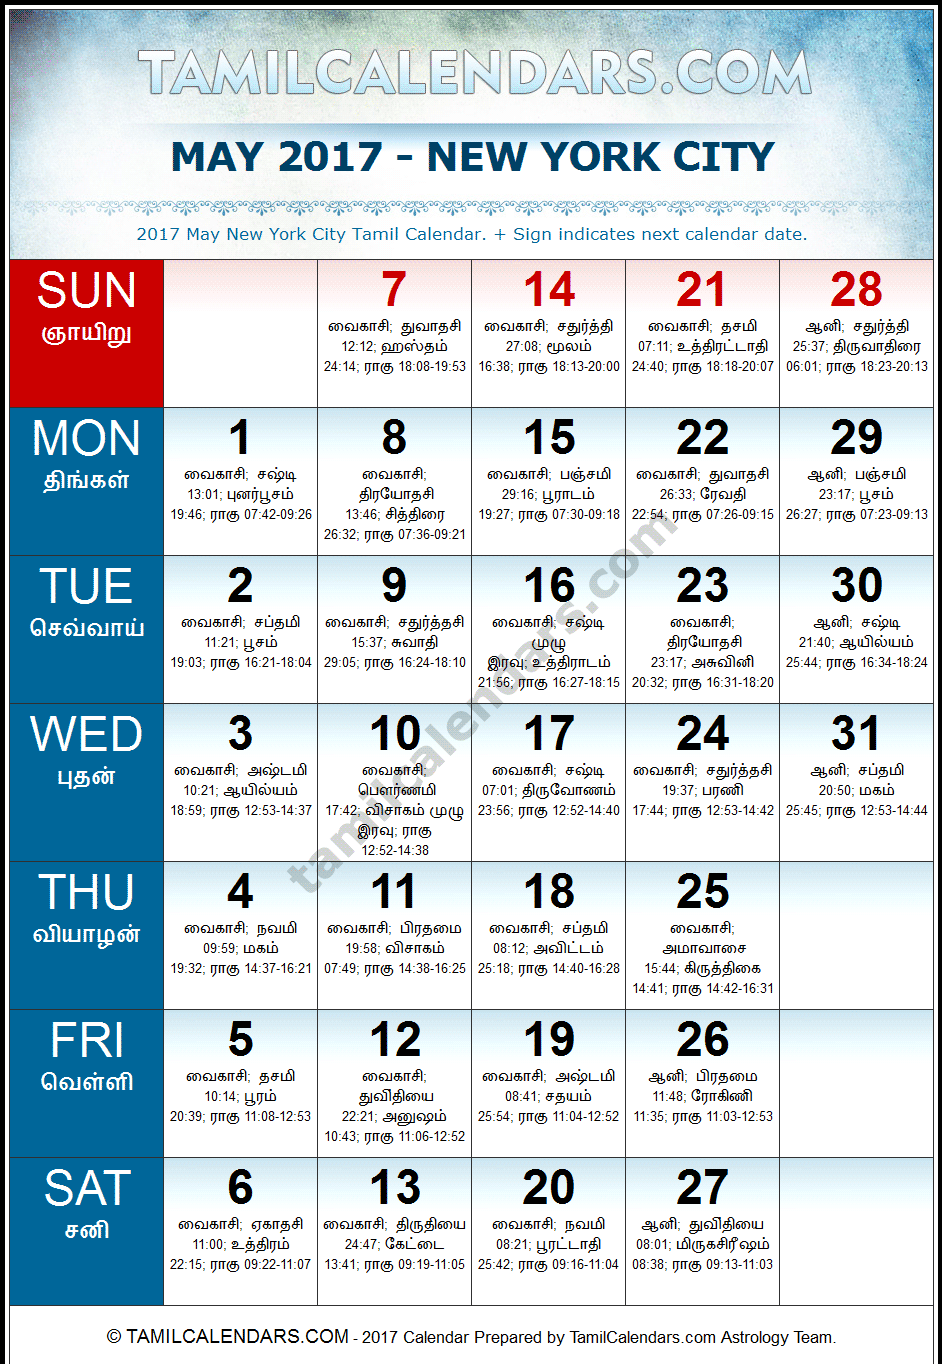 May 2017 Tamil Calendar for New York, USA